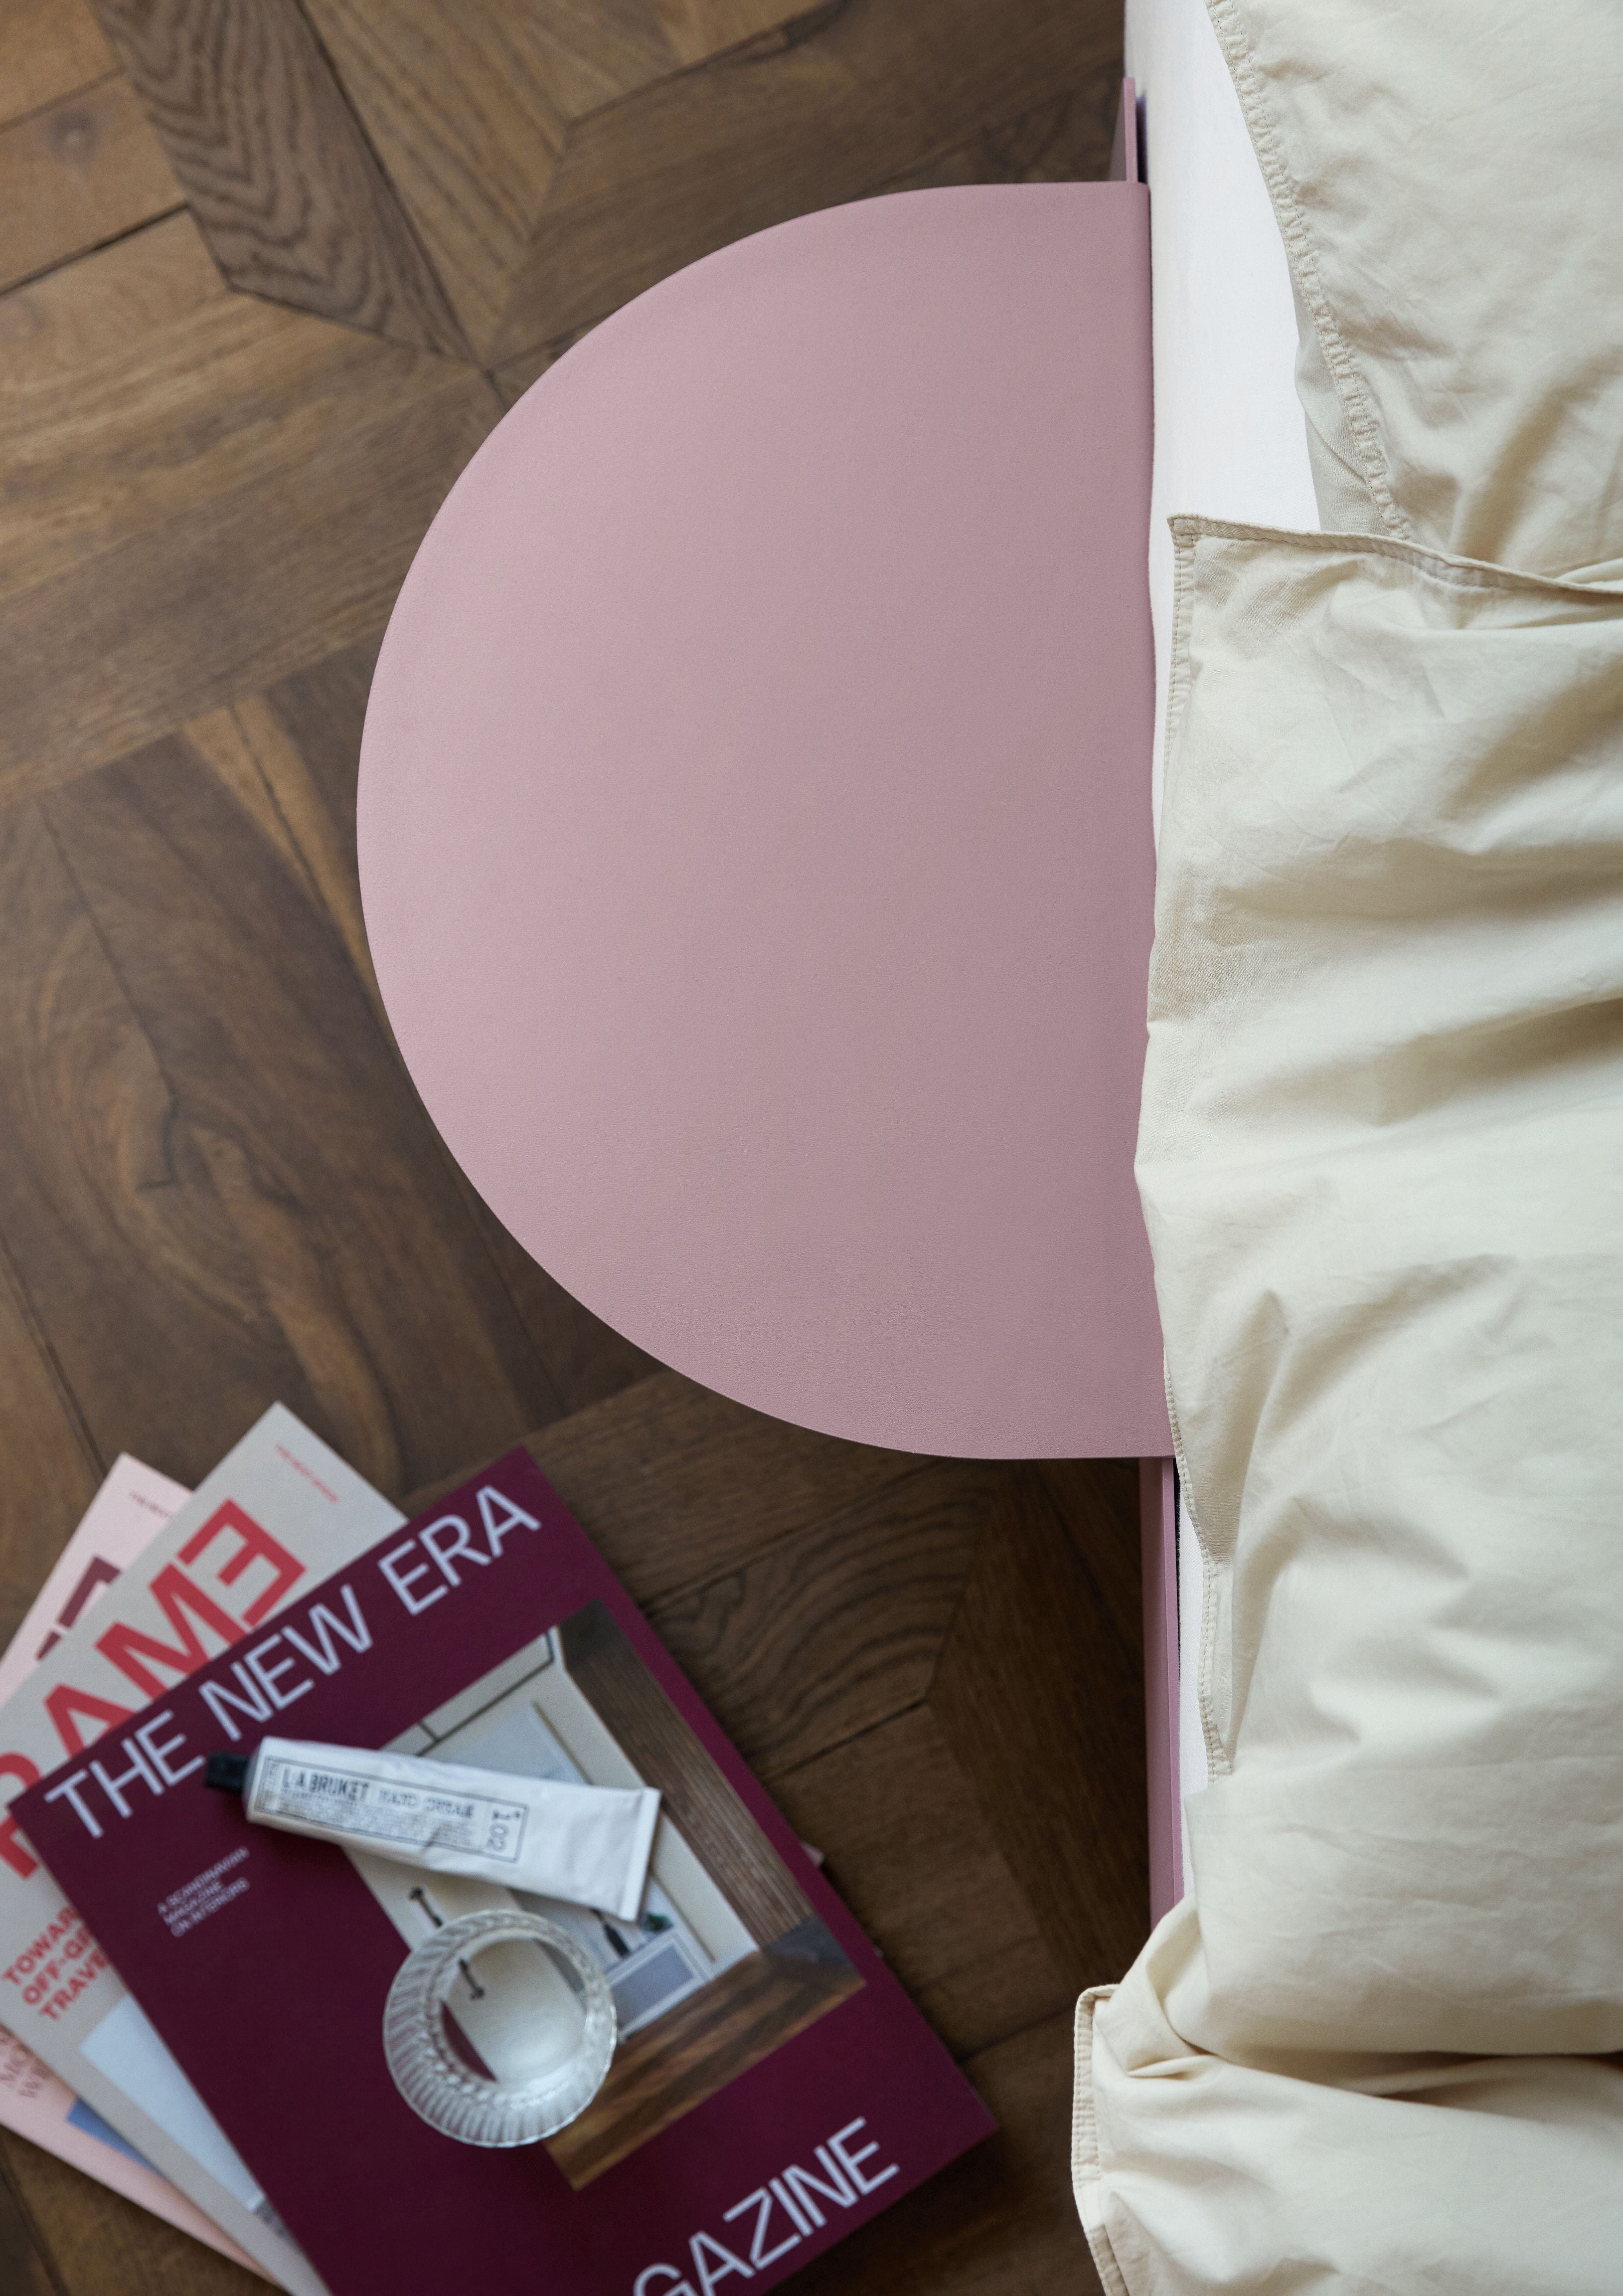 Moebe Säng med 1 sängbord 90 cm, dammig ros